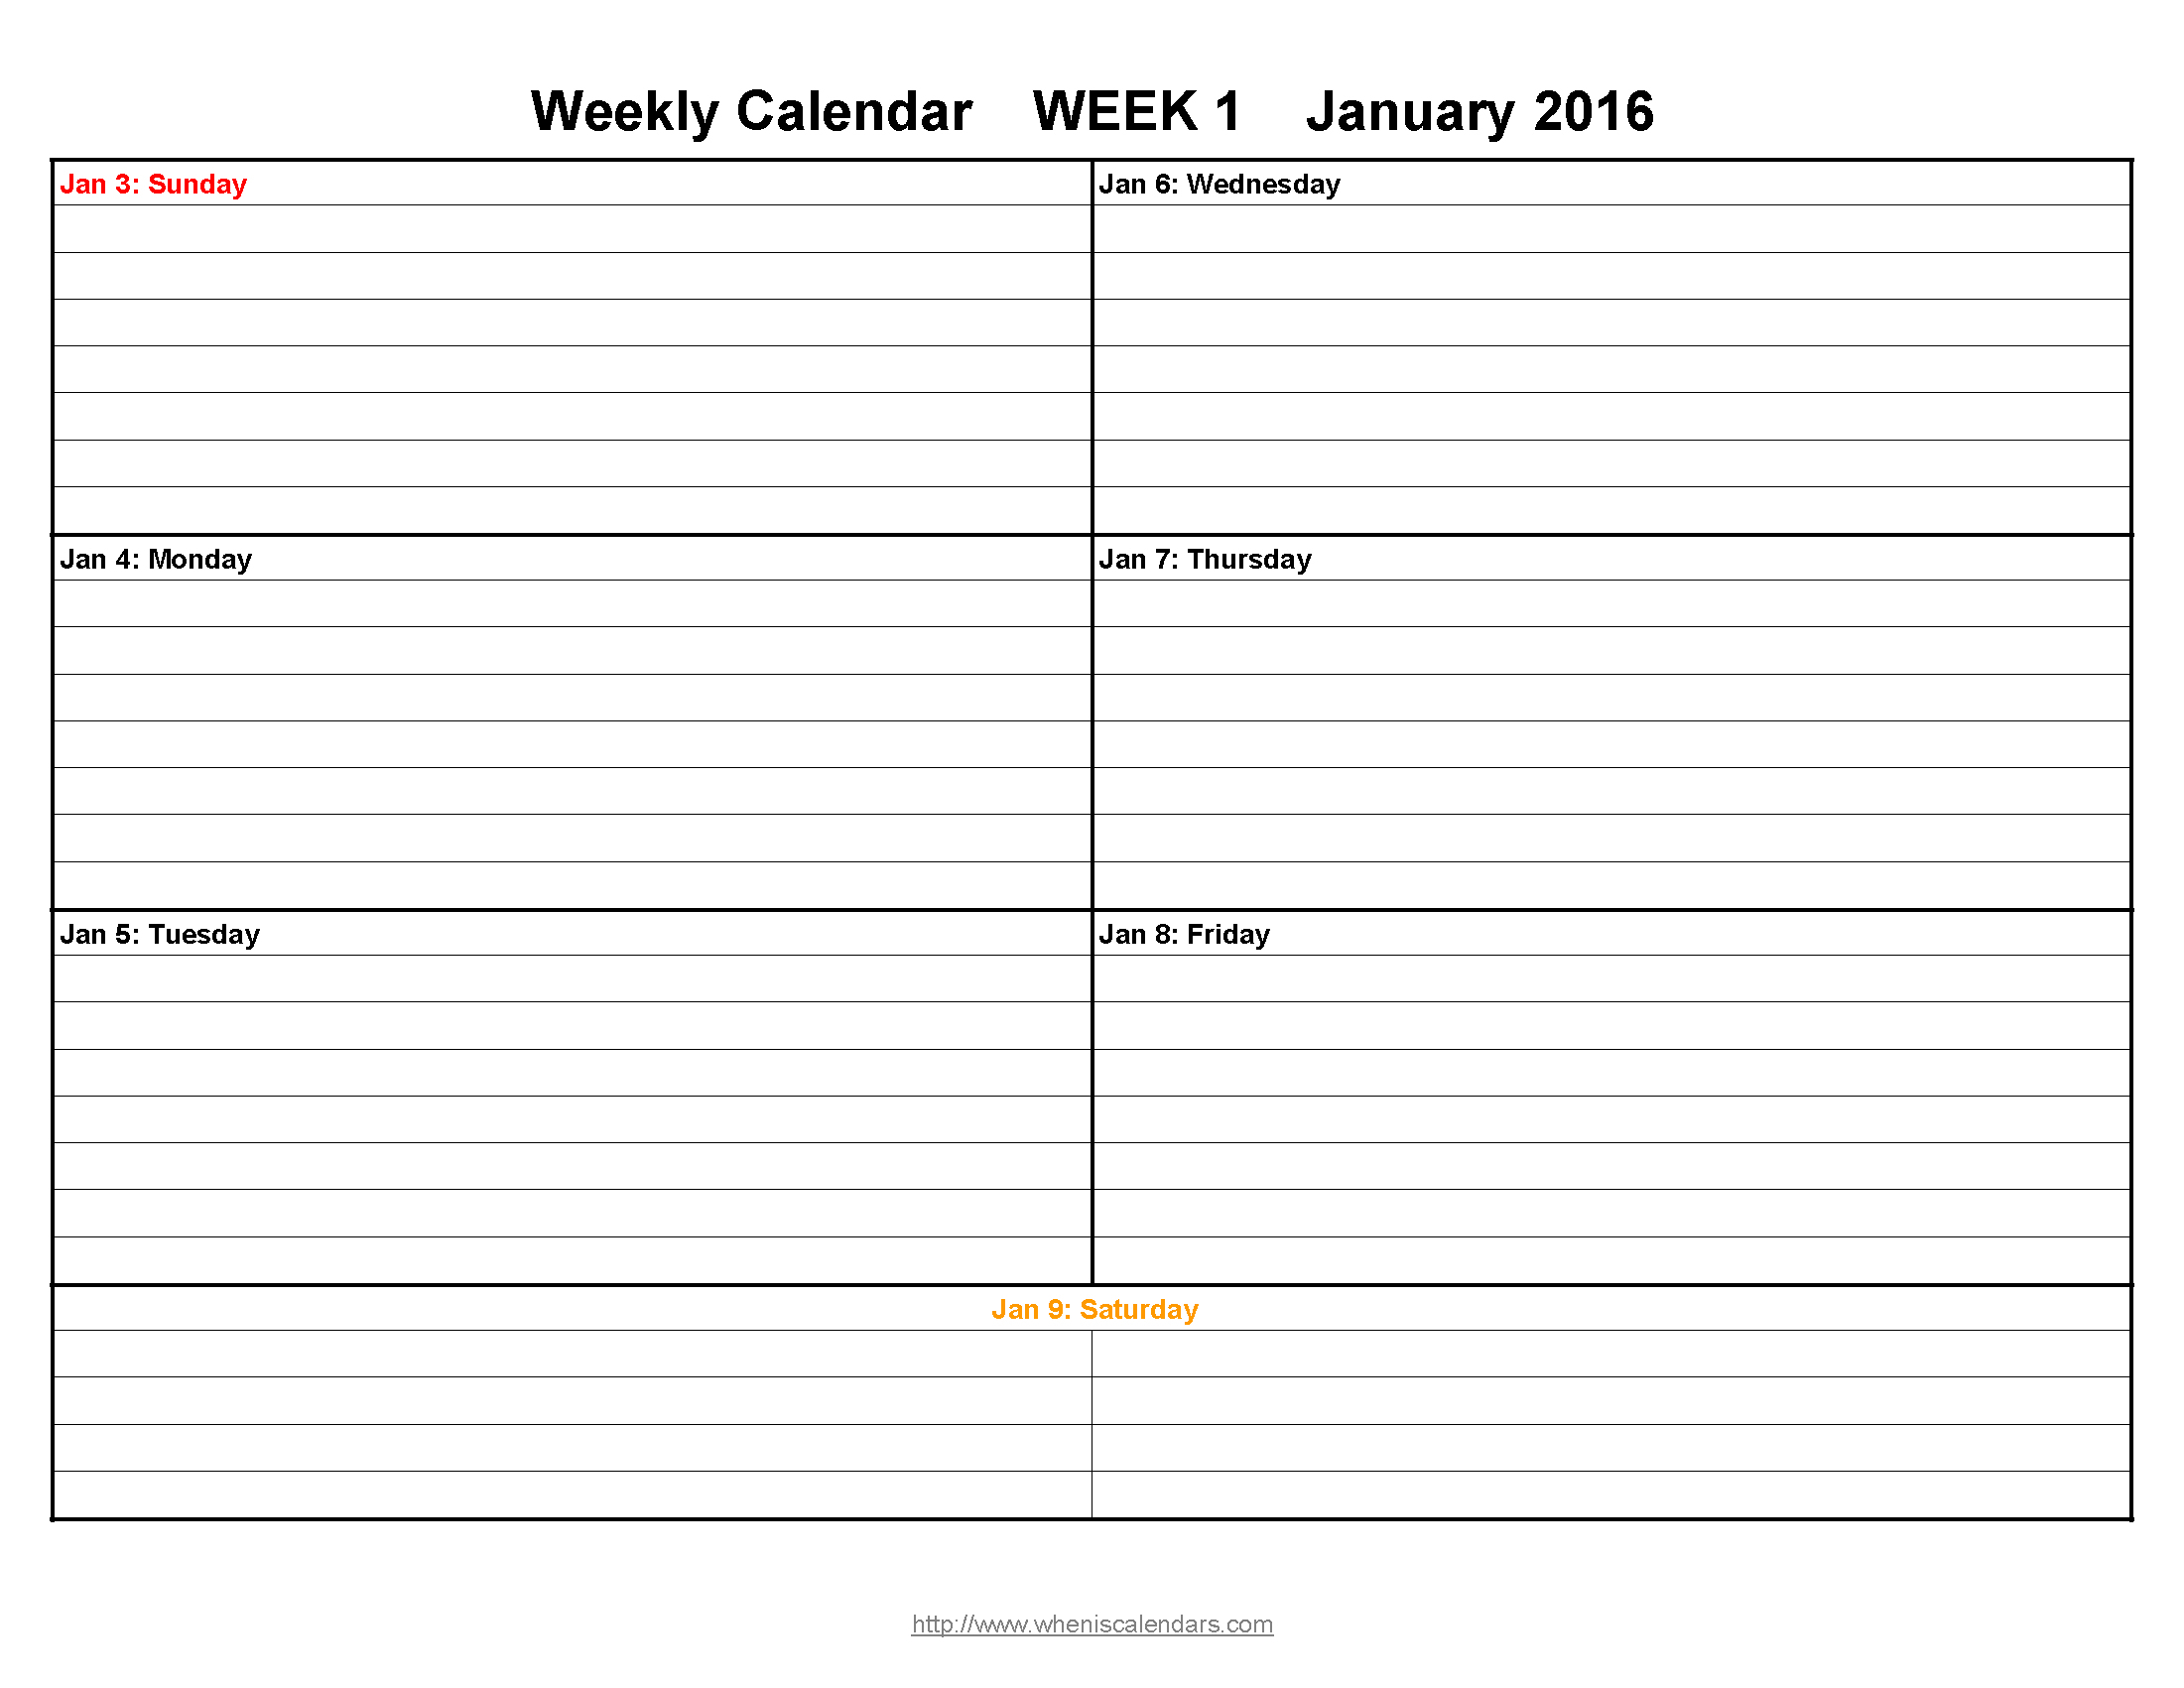 Free Printable Weekly Calendars 2016 | Aaron The Artist - Free Printable Pocket Planner 2016